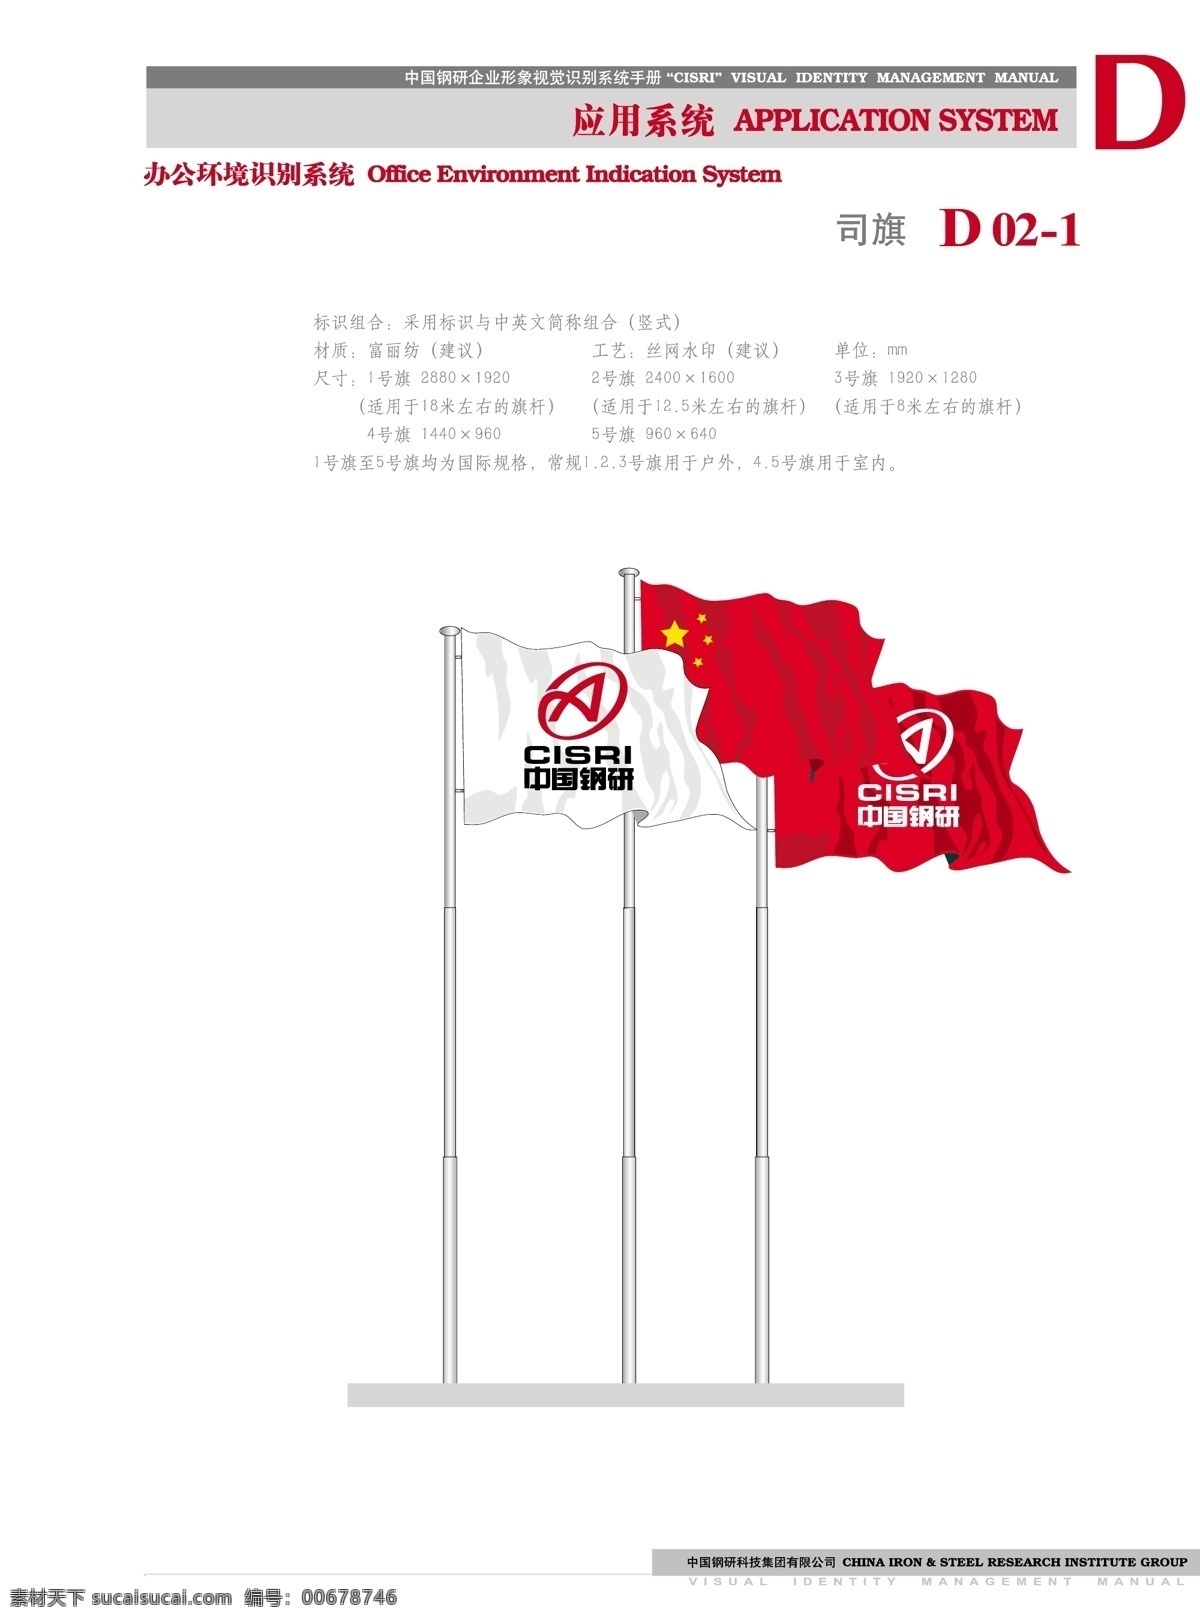 钢研画册一页 五星红旗 中国钢研 企业形象 视觉识别 手册 标志图标 企业 logo 标志